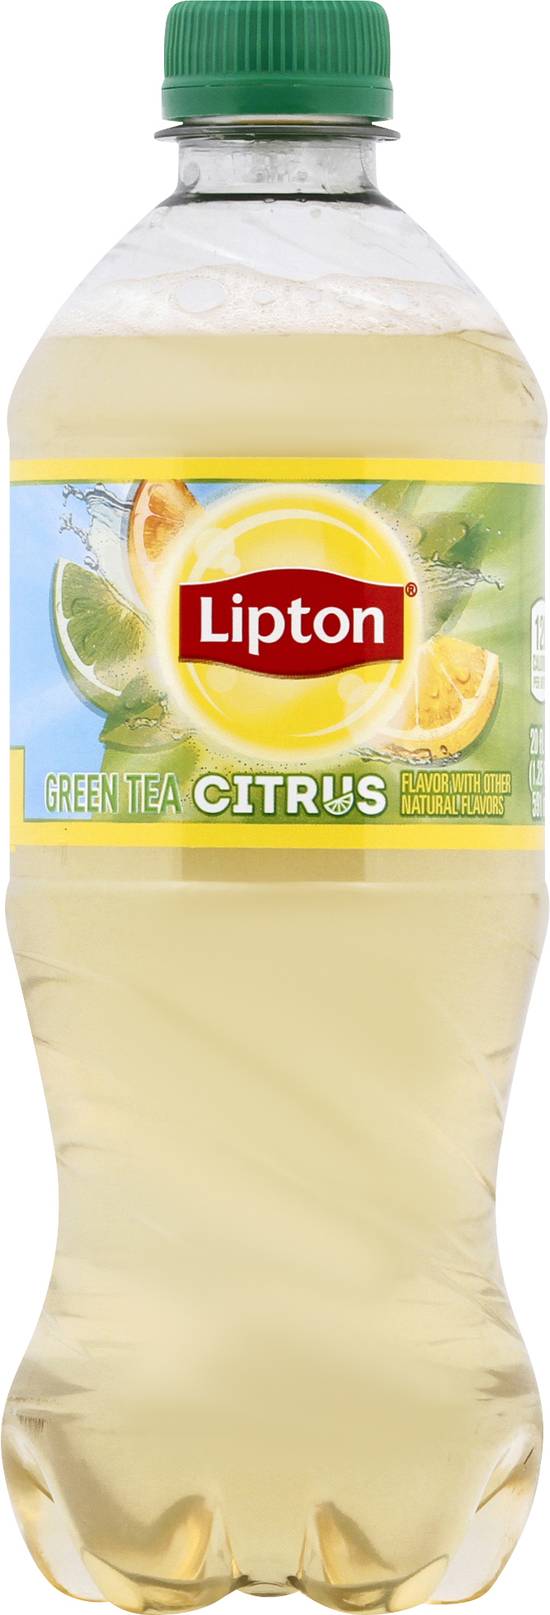 Lipton Green Tea (20 fl oz) (citrus)